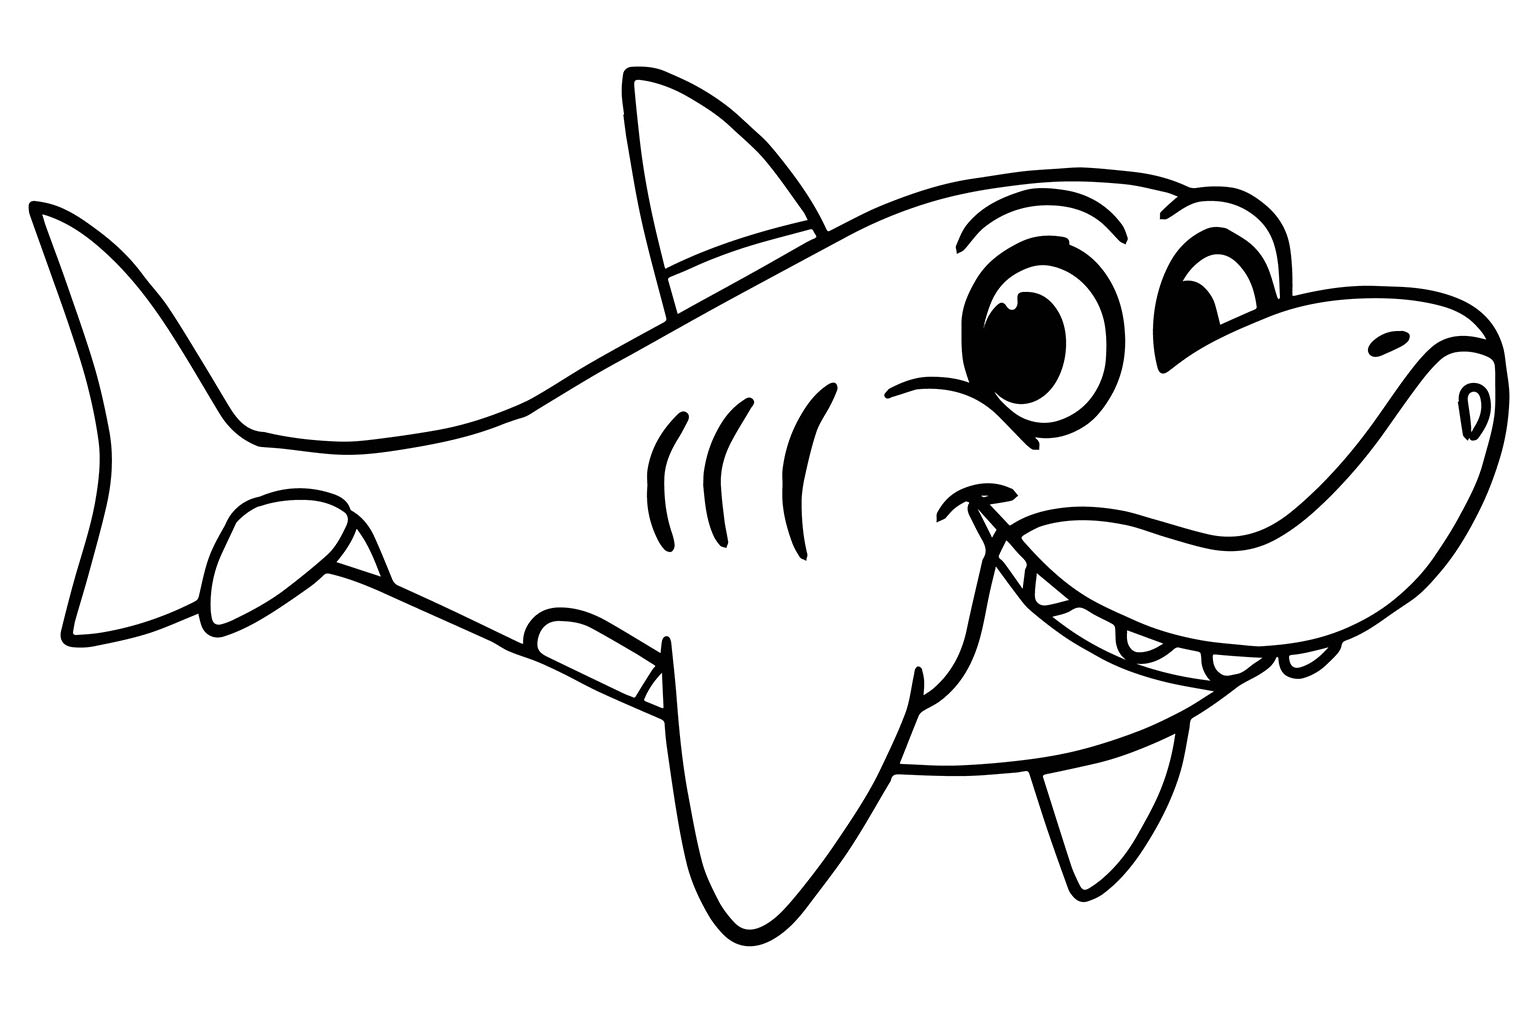 Coloração de um tubarão sorridente